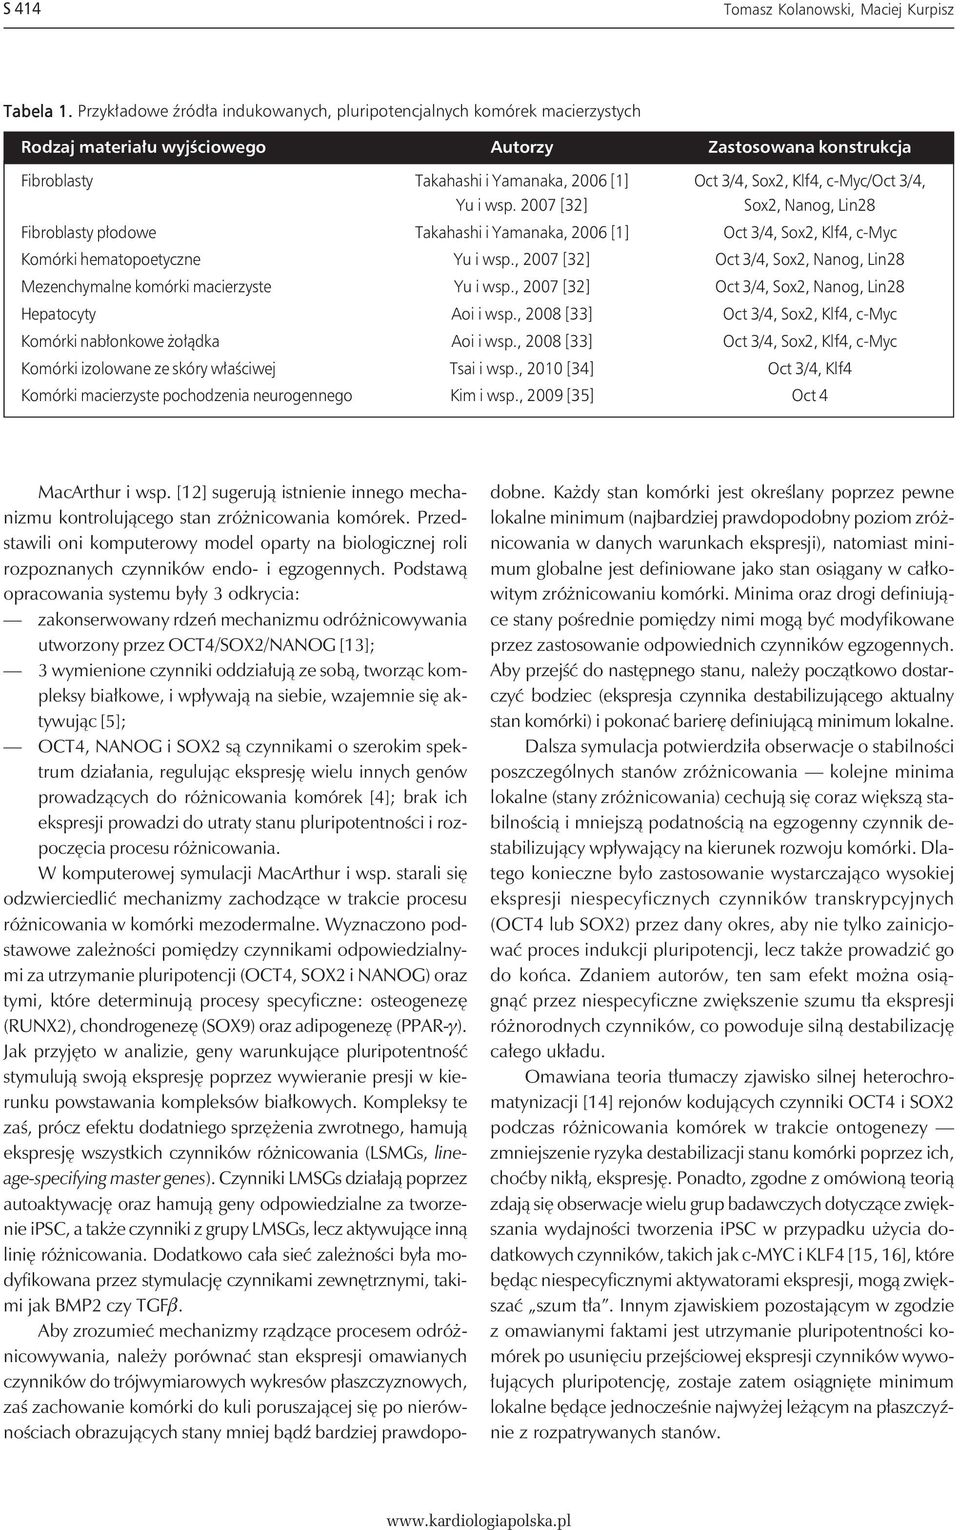 c-myc/oct 3/4, Yu i wsp. 2007 [32] Sox2, Nanog, Lin28 Fibroblasty płodowe Takahashi i Yamanaka, 2006 [1] Oct 3/4, Sox2, Klf4, c-myc Komórki hematopoetyczne Yu i wsp.